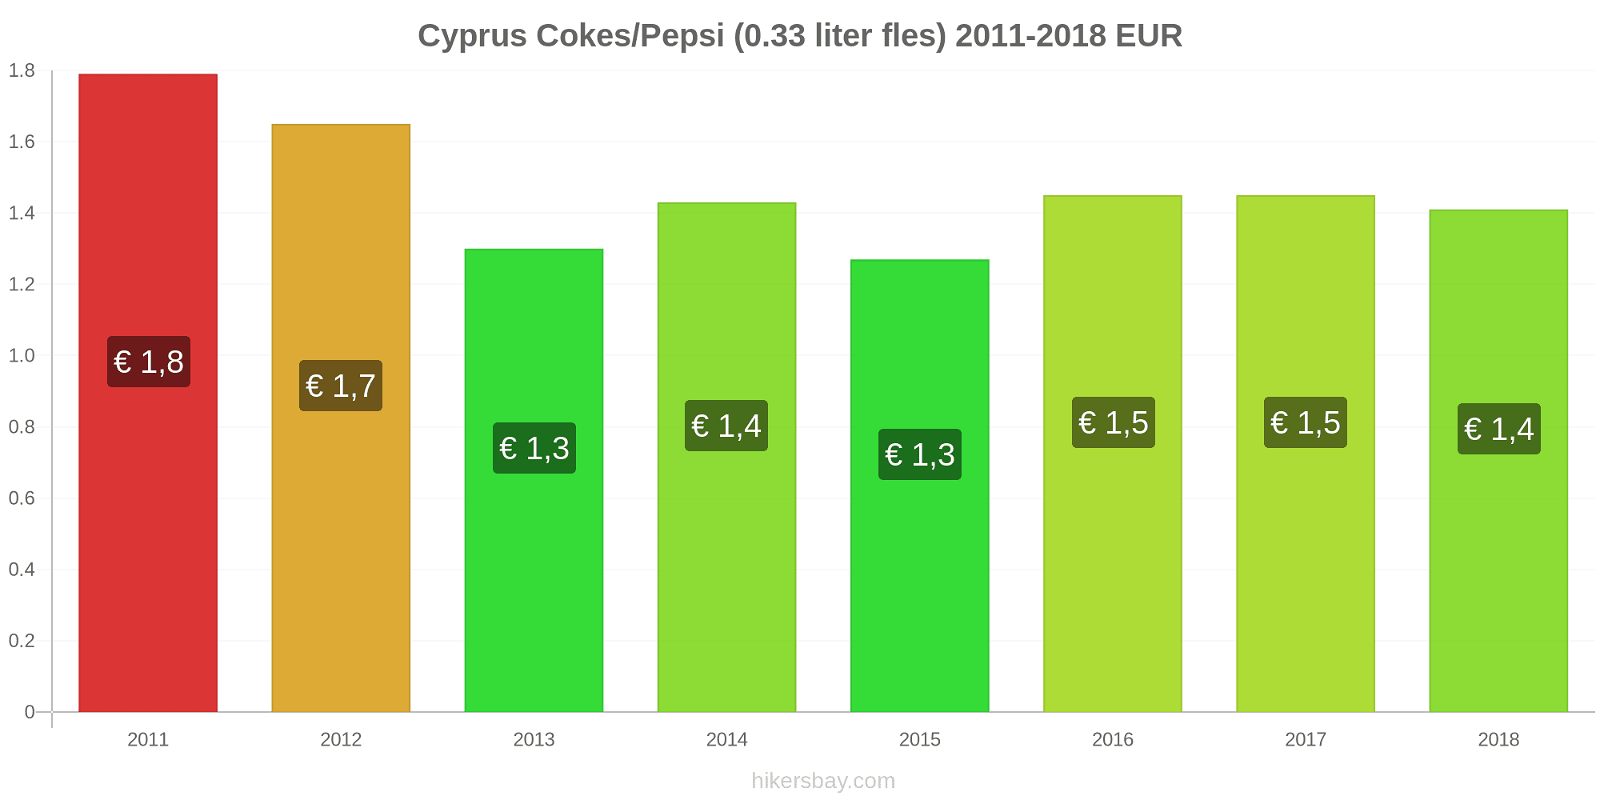 Cyprus prijswijzigingen Cokes/Pepsi (0,33 literfles) hikersbay.com